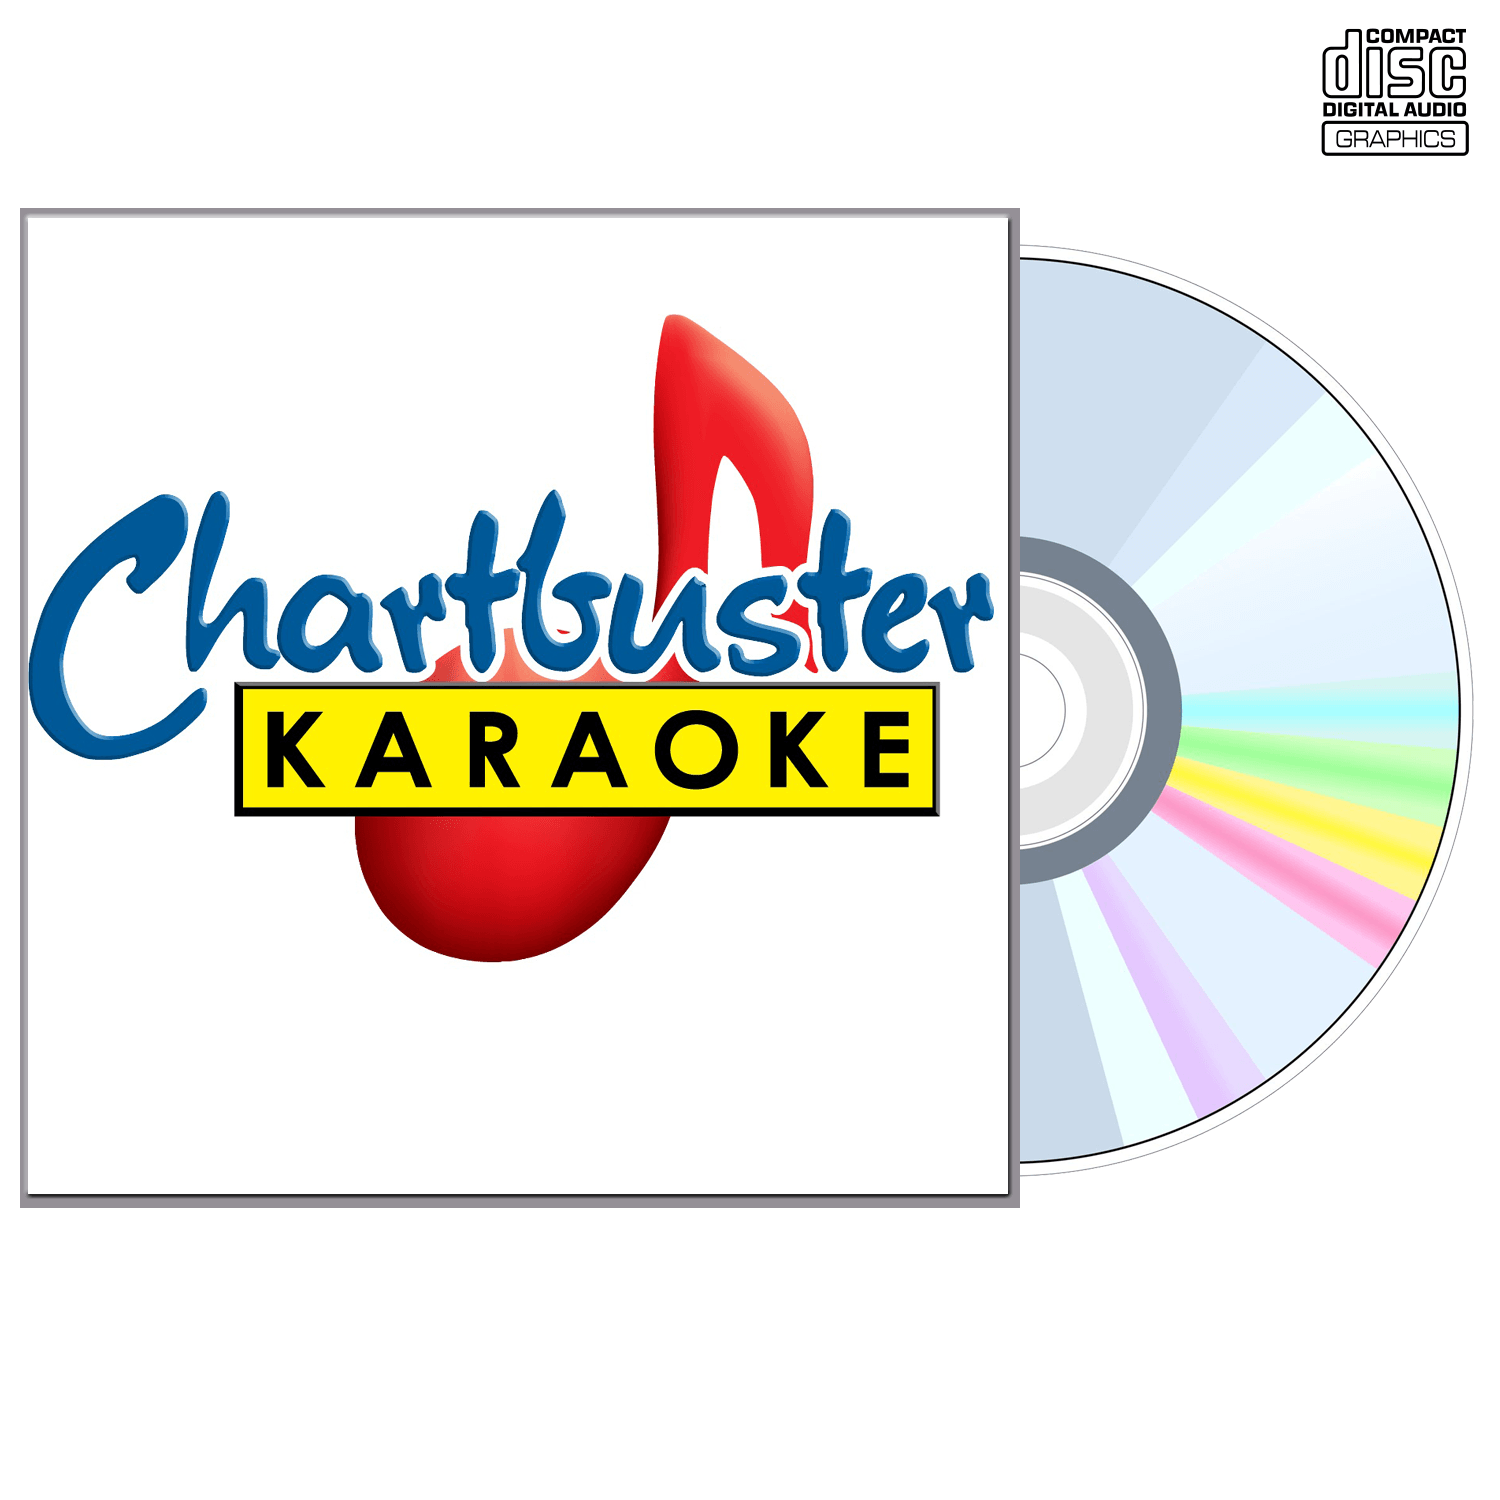 Beatles Vol 1 - CD+G - Chartbuster Karaoke - Karaoke Home Entertainment